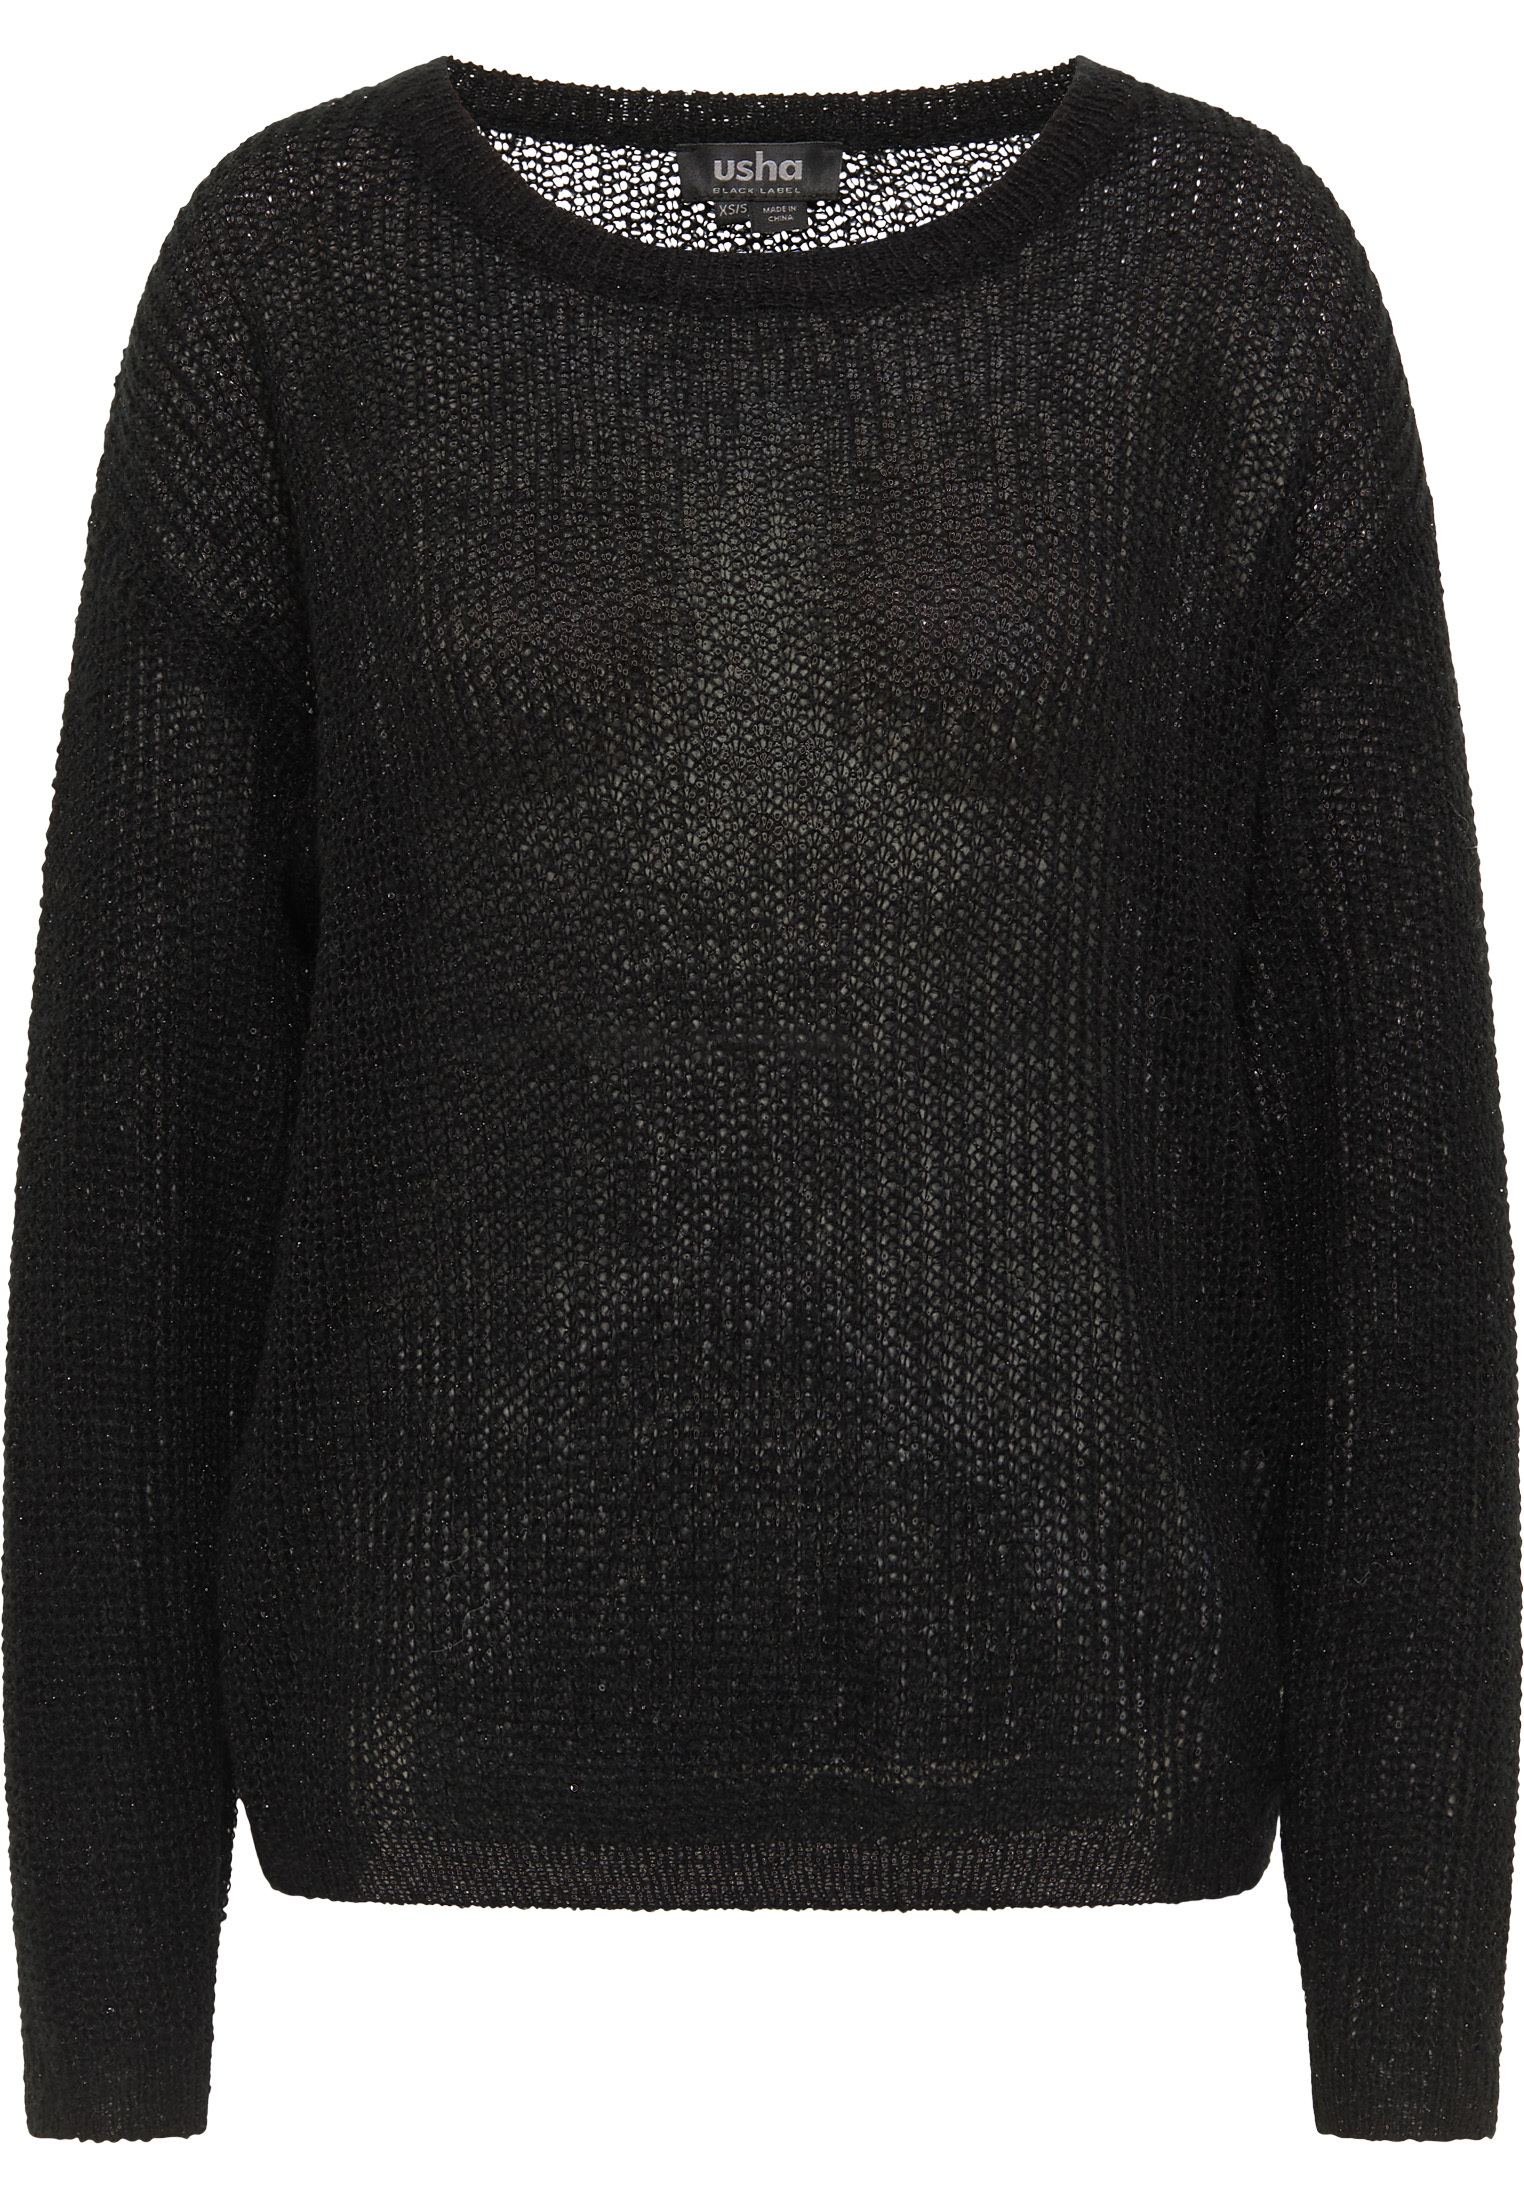 Odzież 9TQi2 usha BLACK LABEL Sweter w kolorze Czarnym 